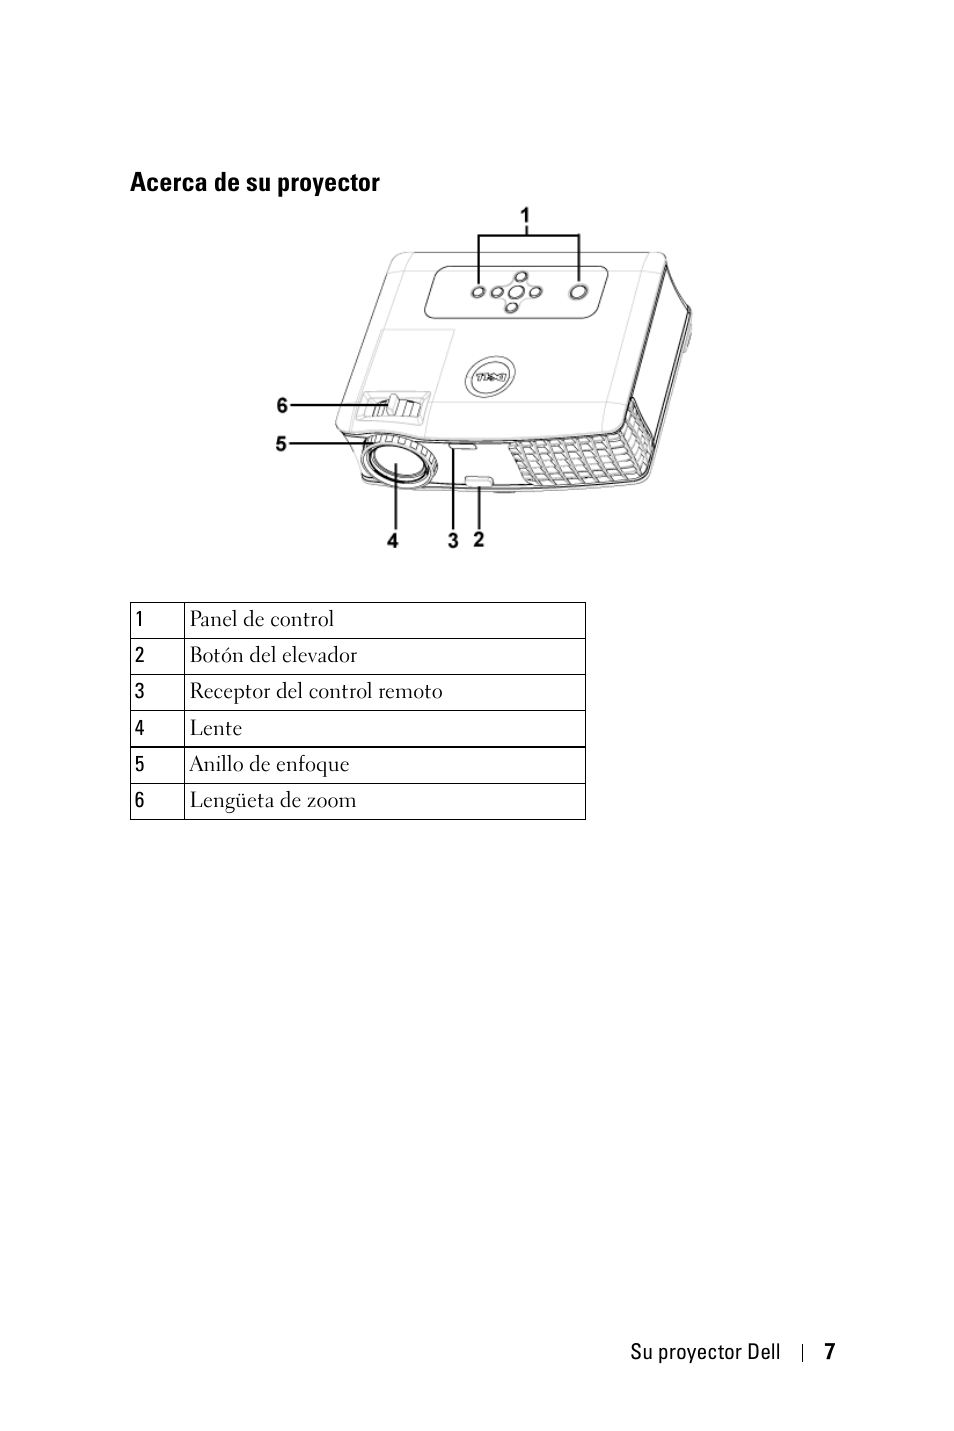 Acerca de su proyector | Dell 2400MP Projector Manual del usuario | Página 7 / 50